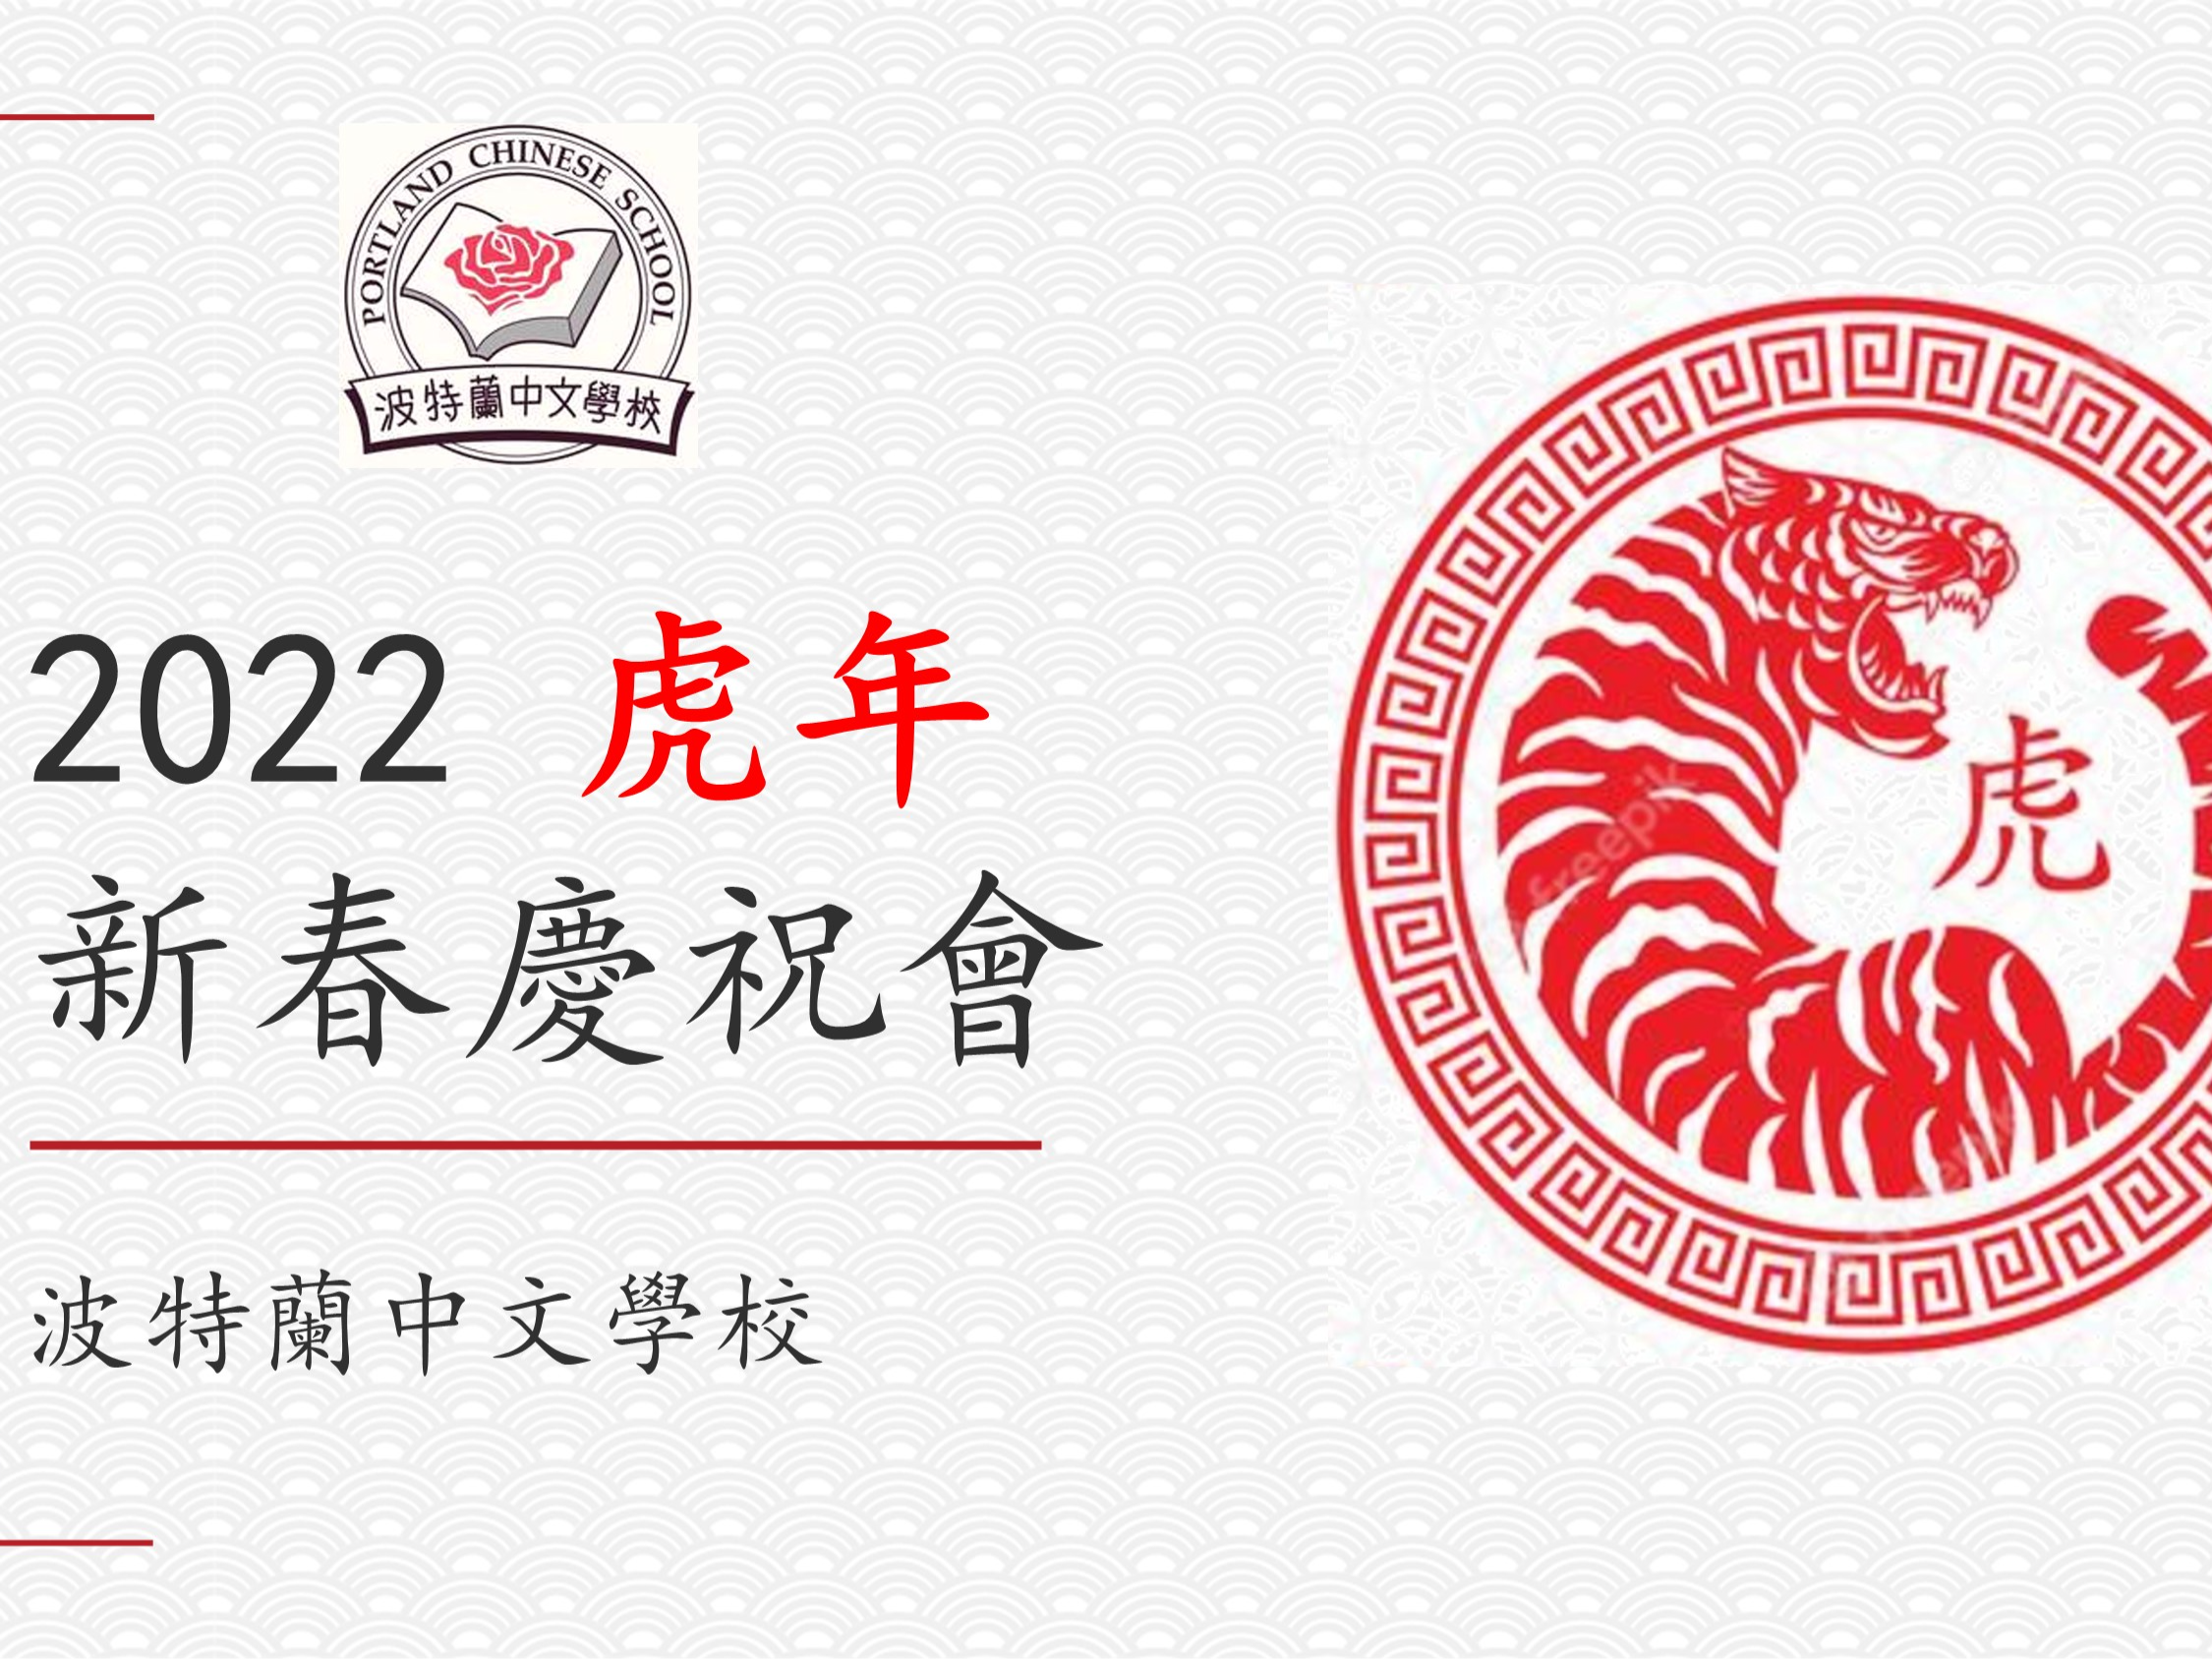 2022年波特蘭中文學校 新年慶祝會圖片